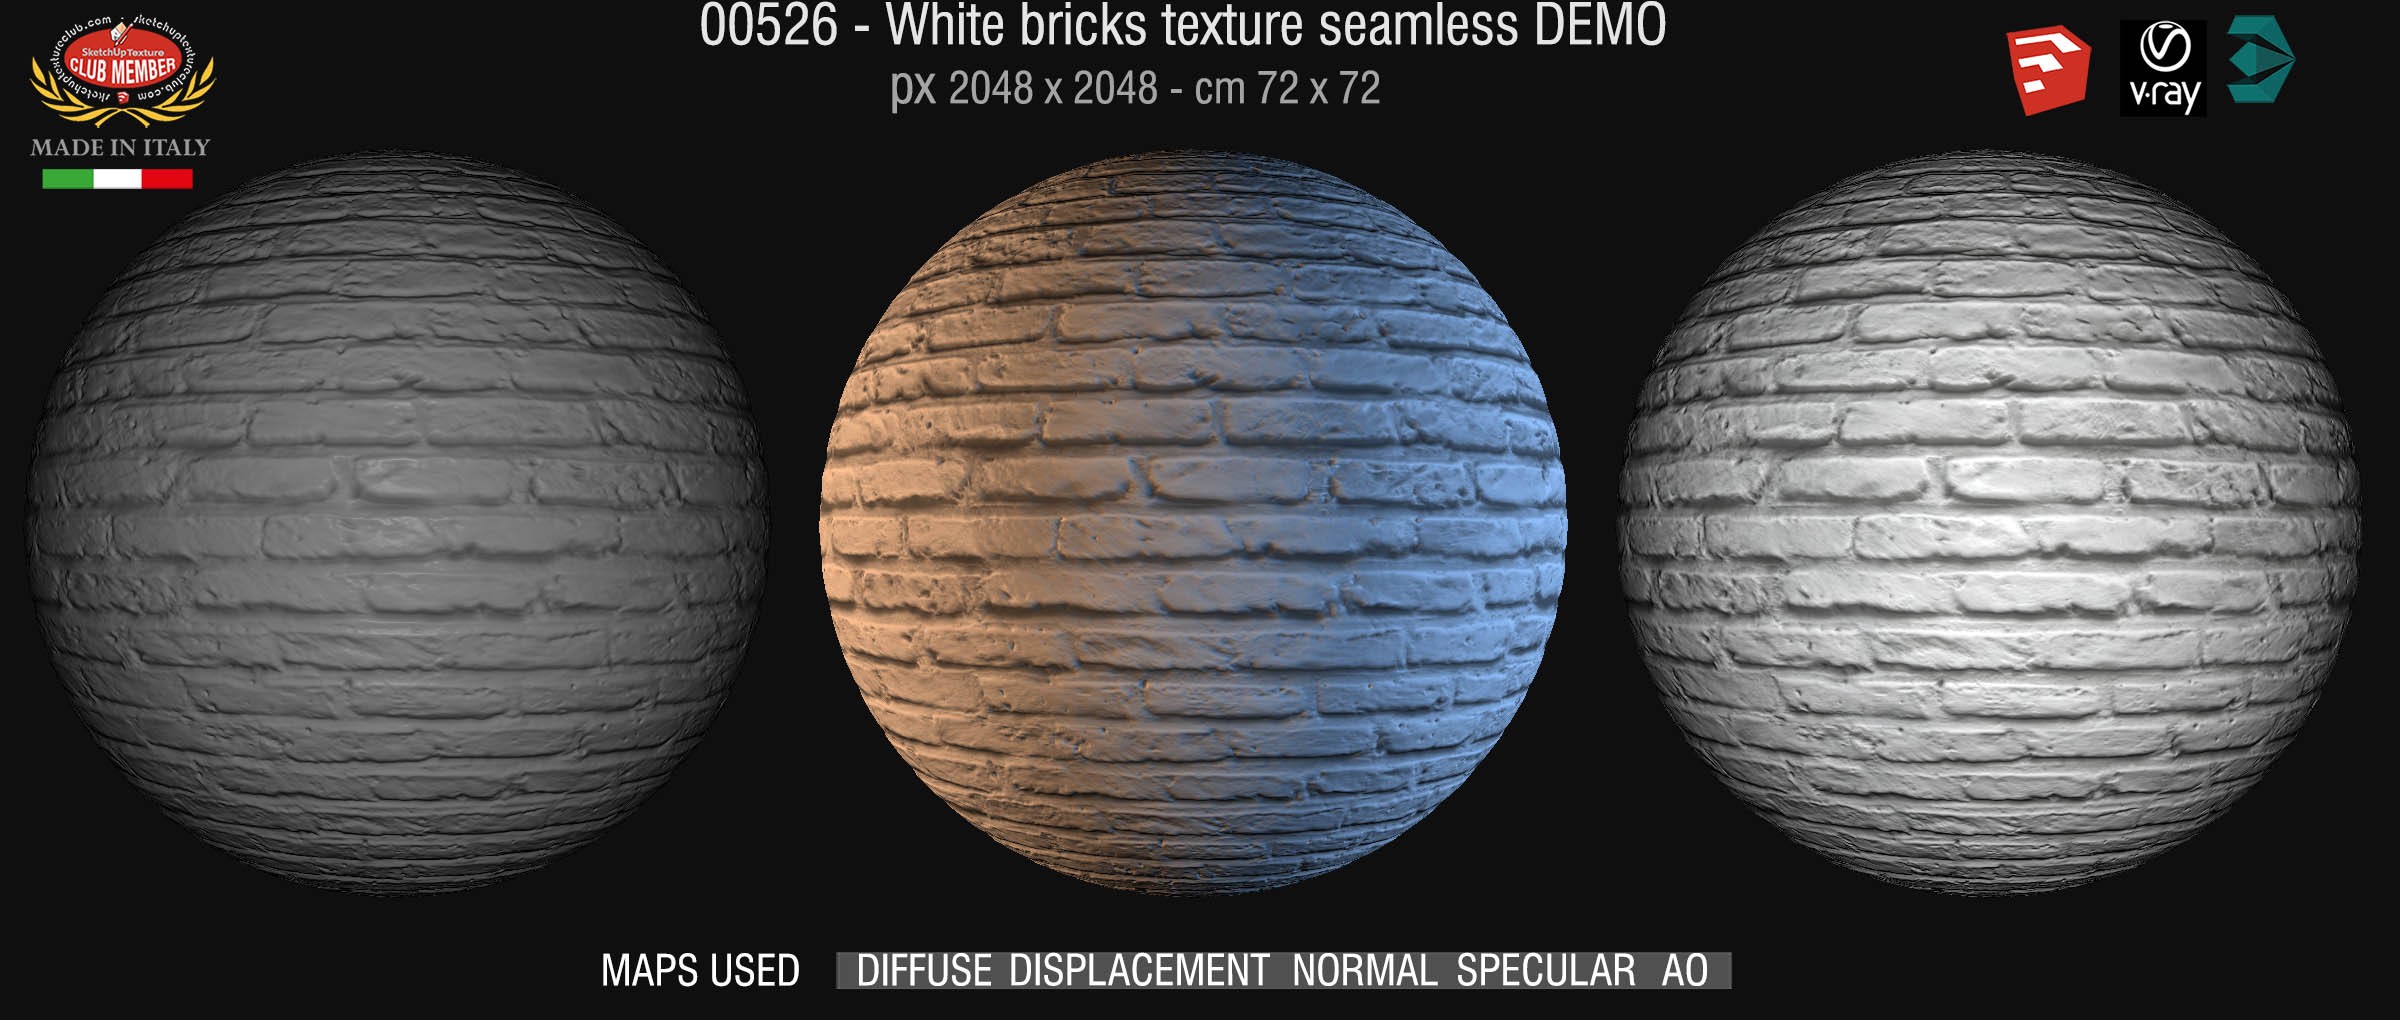 00526 White bricks texture seamless + maps DEMO